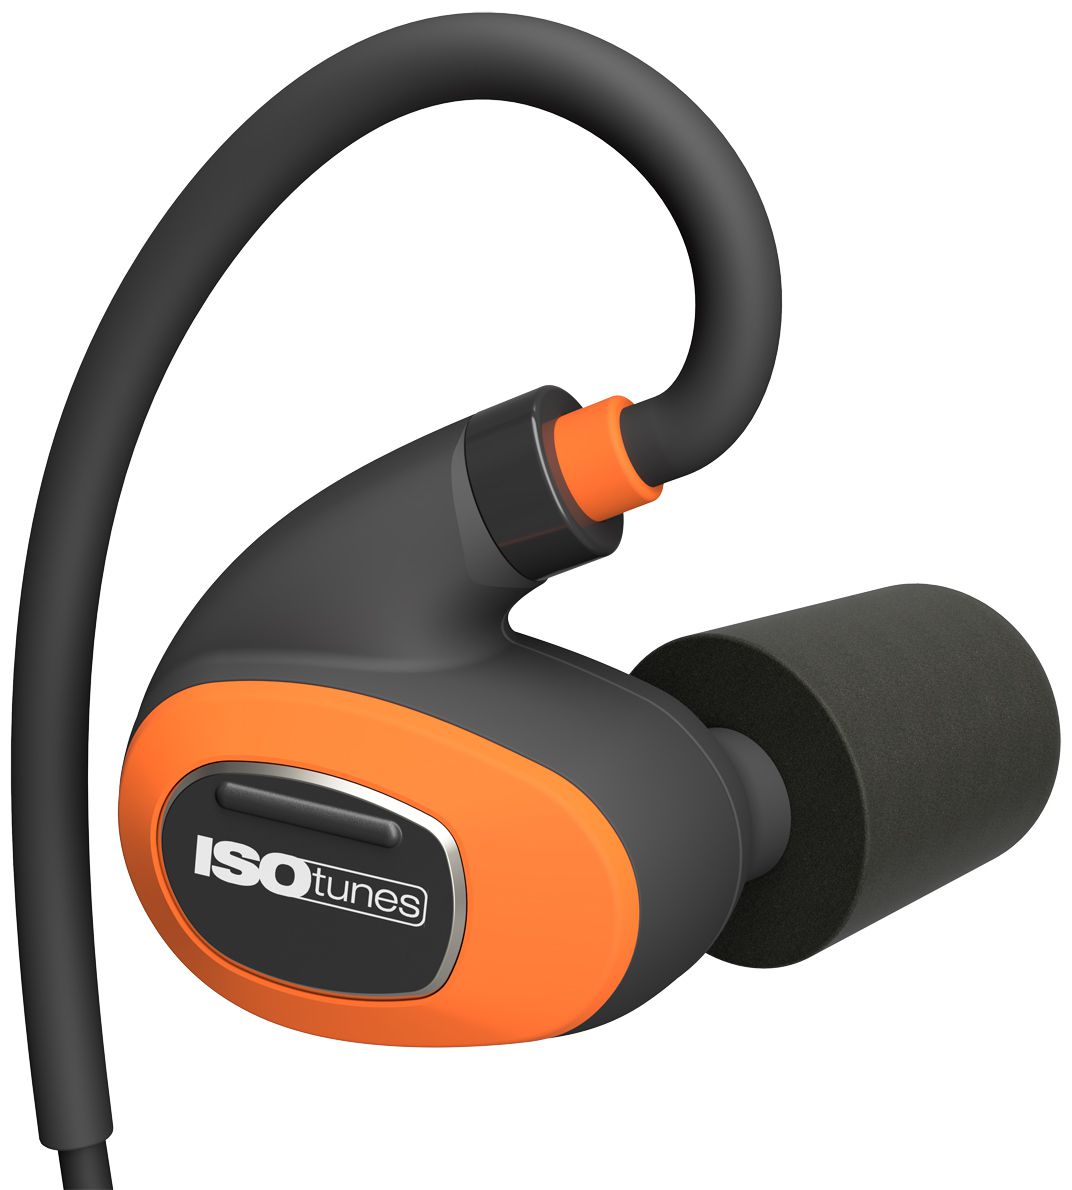 ISOtunes Pro 2.0 Gehörschutzstöpsel - Bluetooth-Kopfhörer mit Noise Cancelling